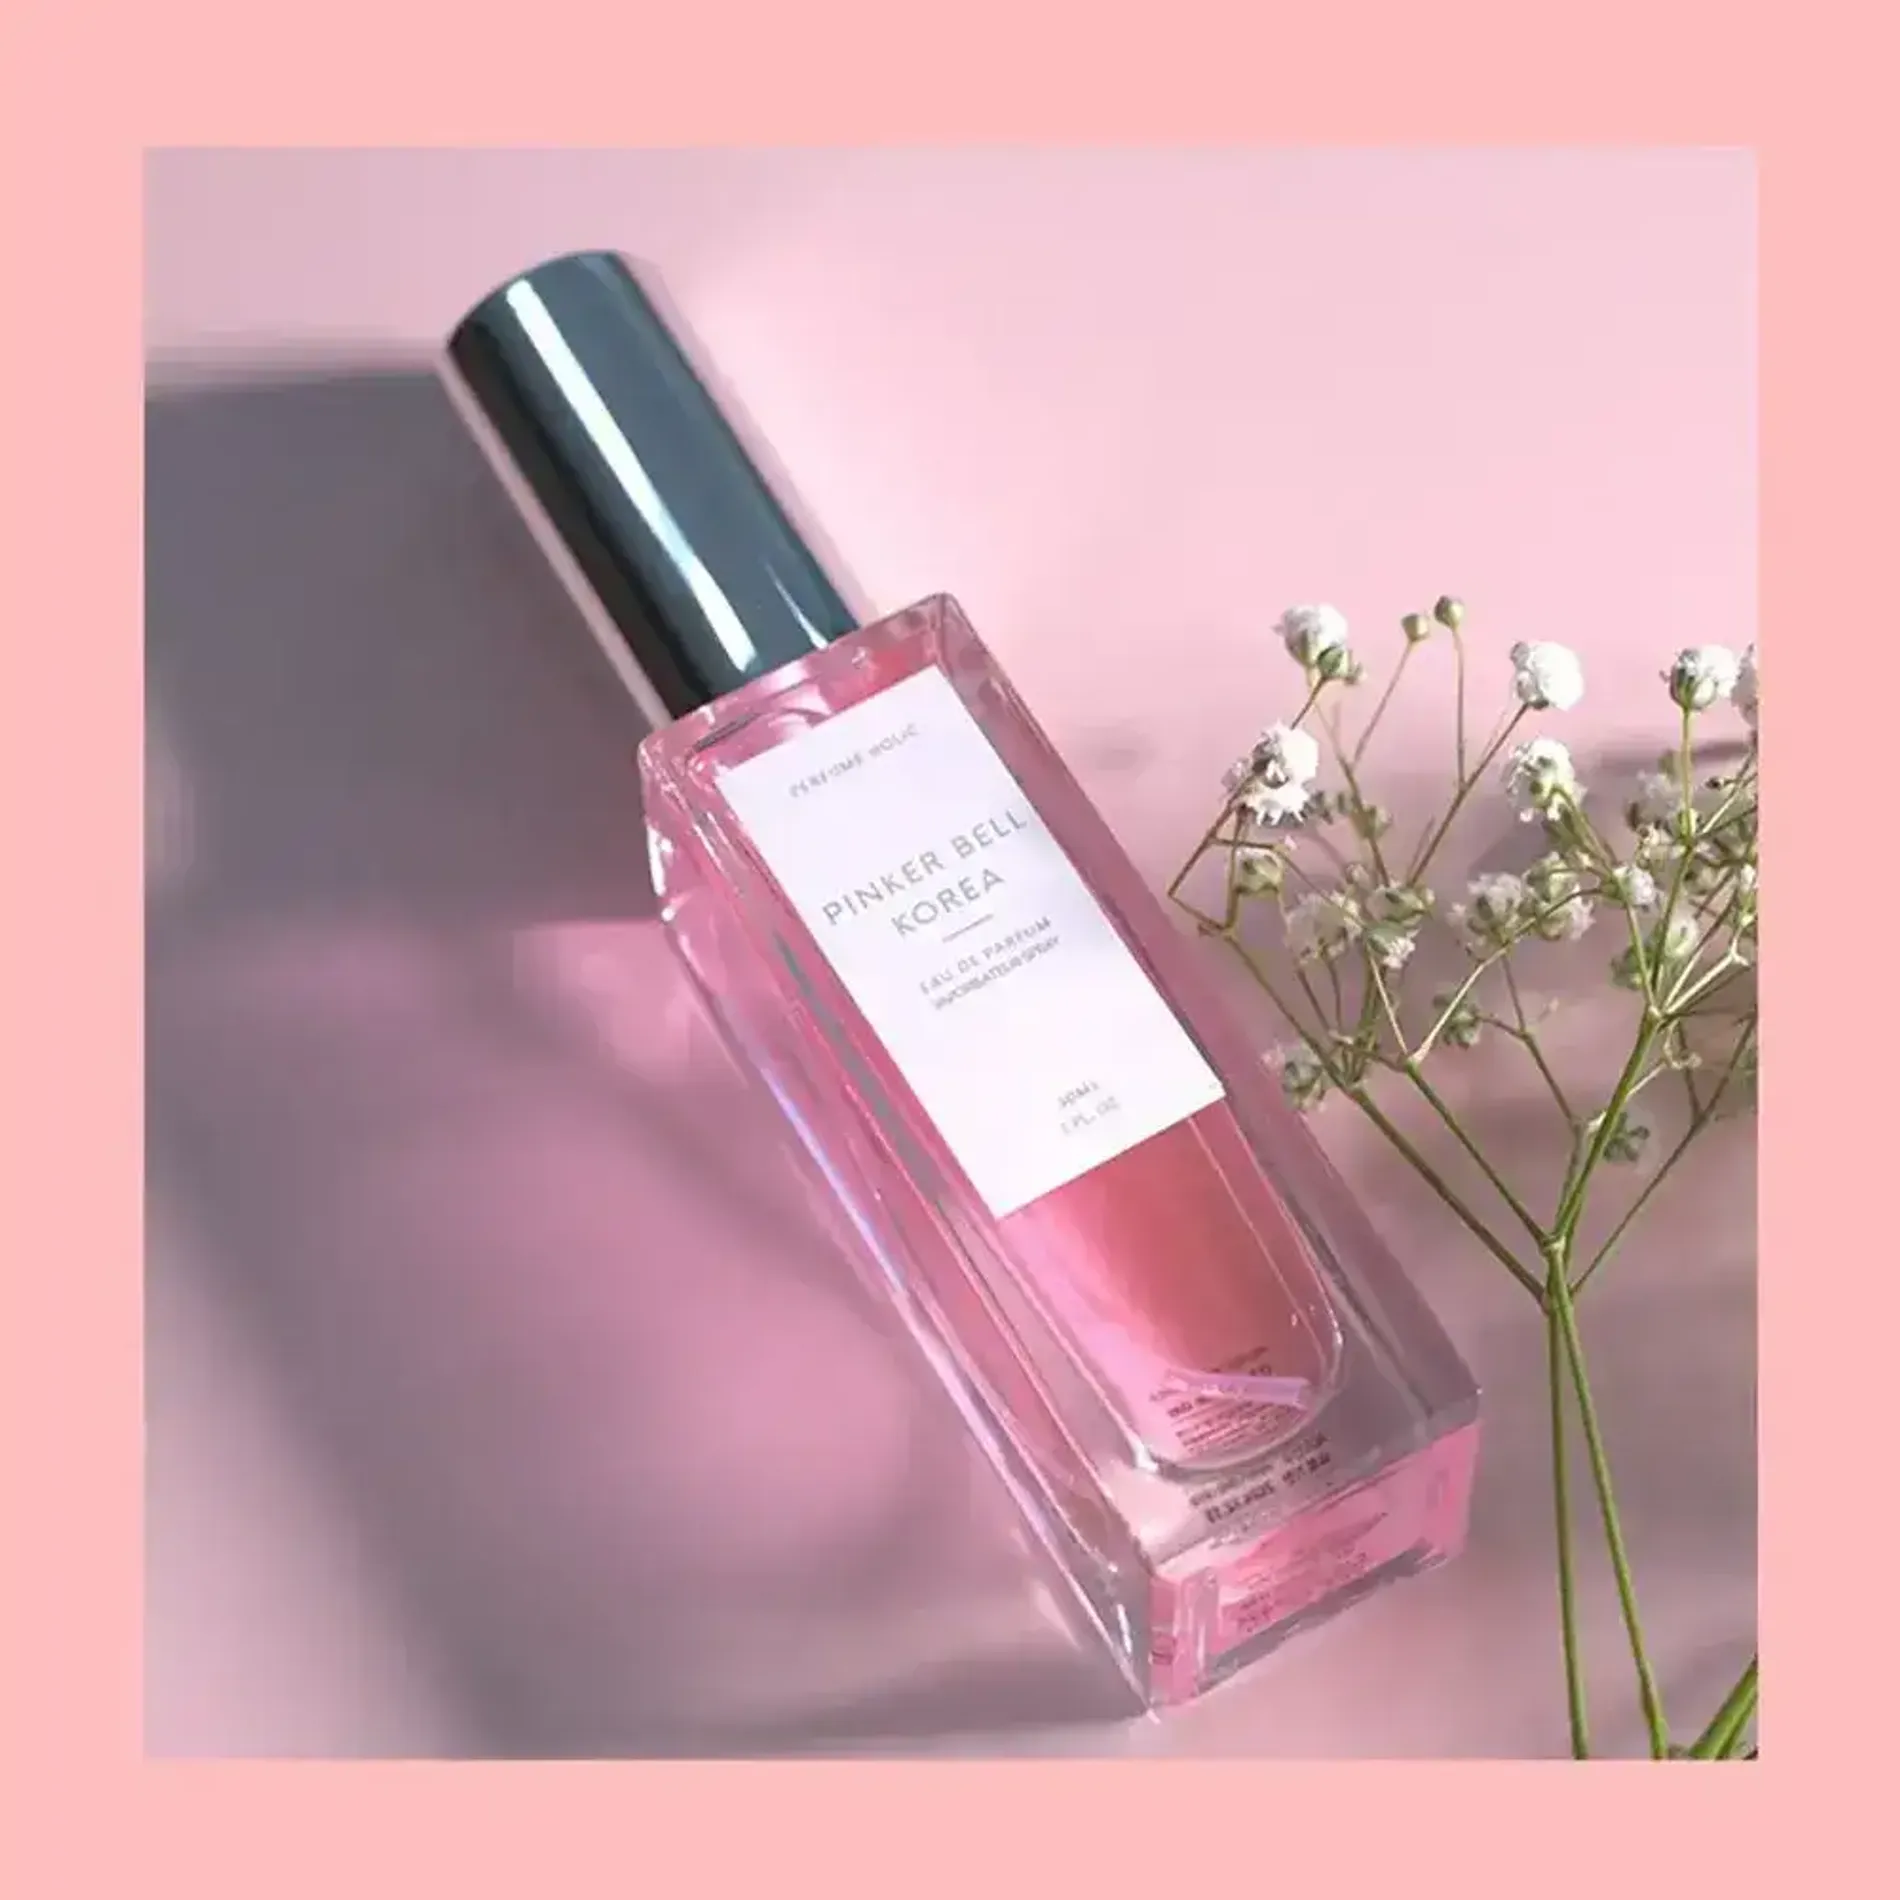 nuoc-hoa-pinker-bell-korea-eau-de-parfum-30ml-3